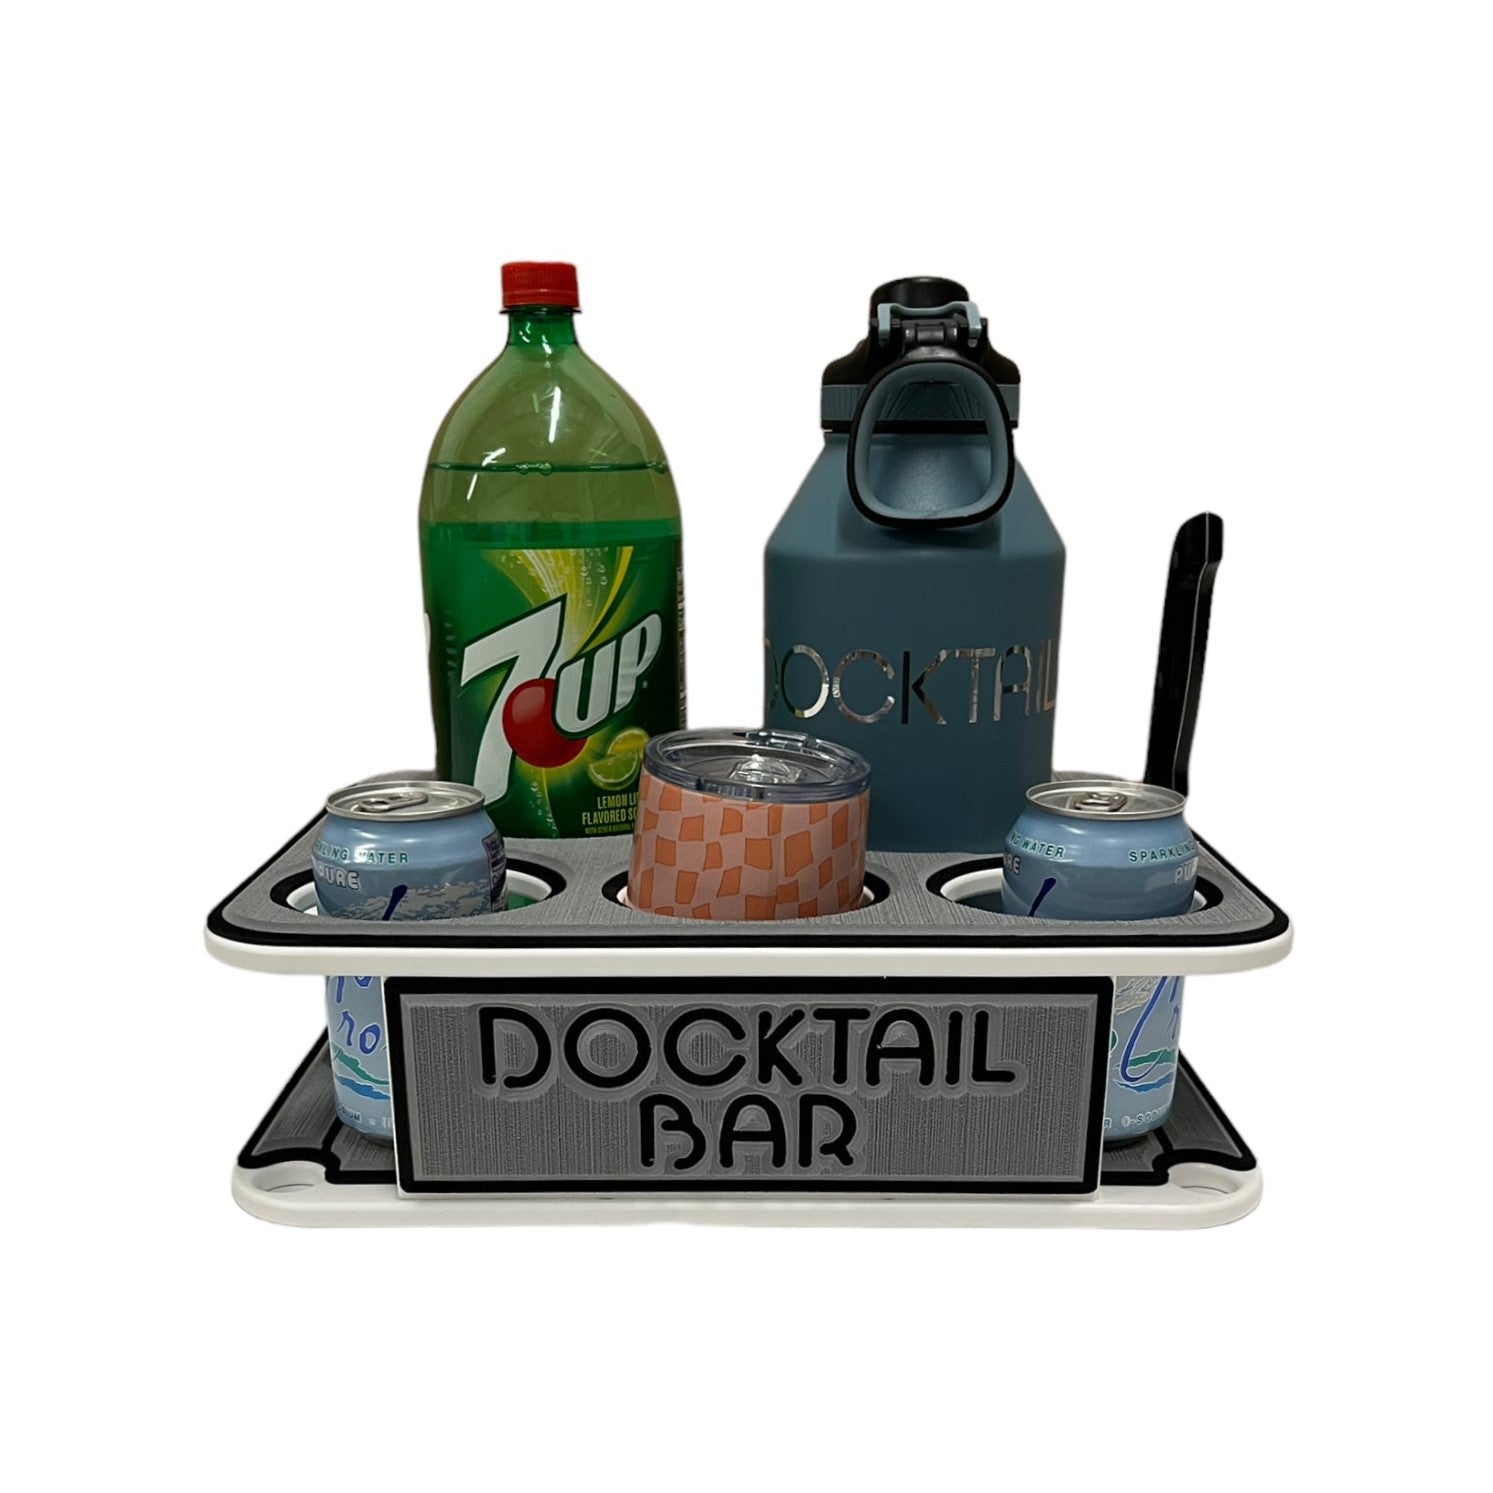 Docktail Jr Boat Cup Holder Table Caddy & Adjustable Rod Holder